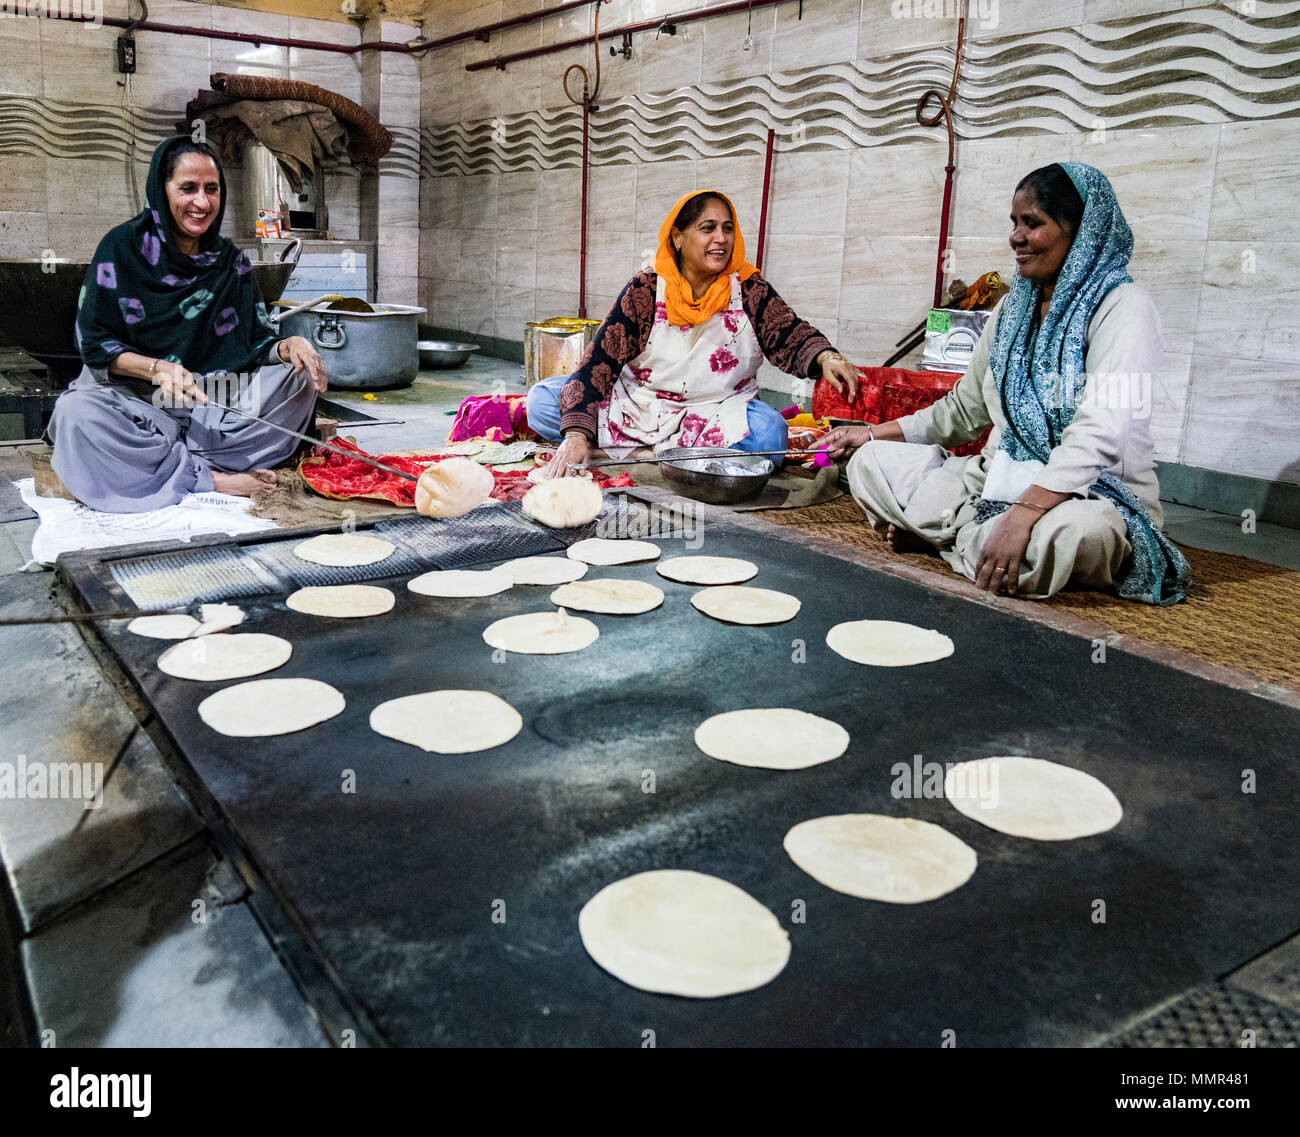 New Dehli, Inde, 20 févr. 2018 - Les femmes préparer le pan (pain) pour des repas gratuits pour les visiteurs de temple Sikh Banque D'Images